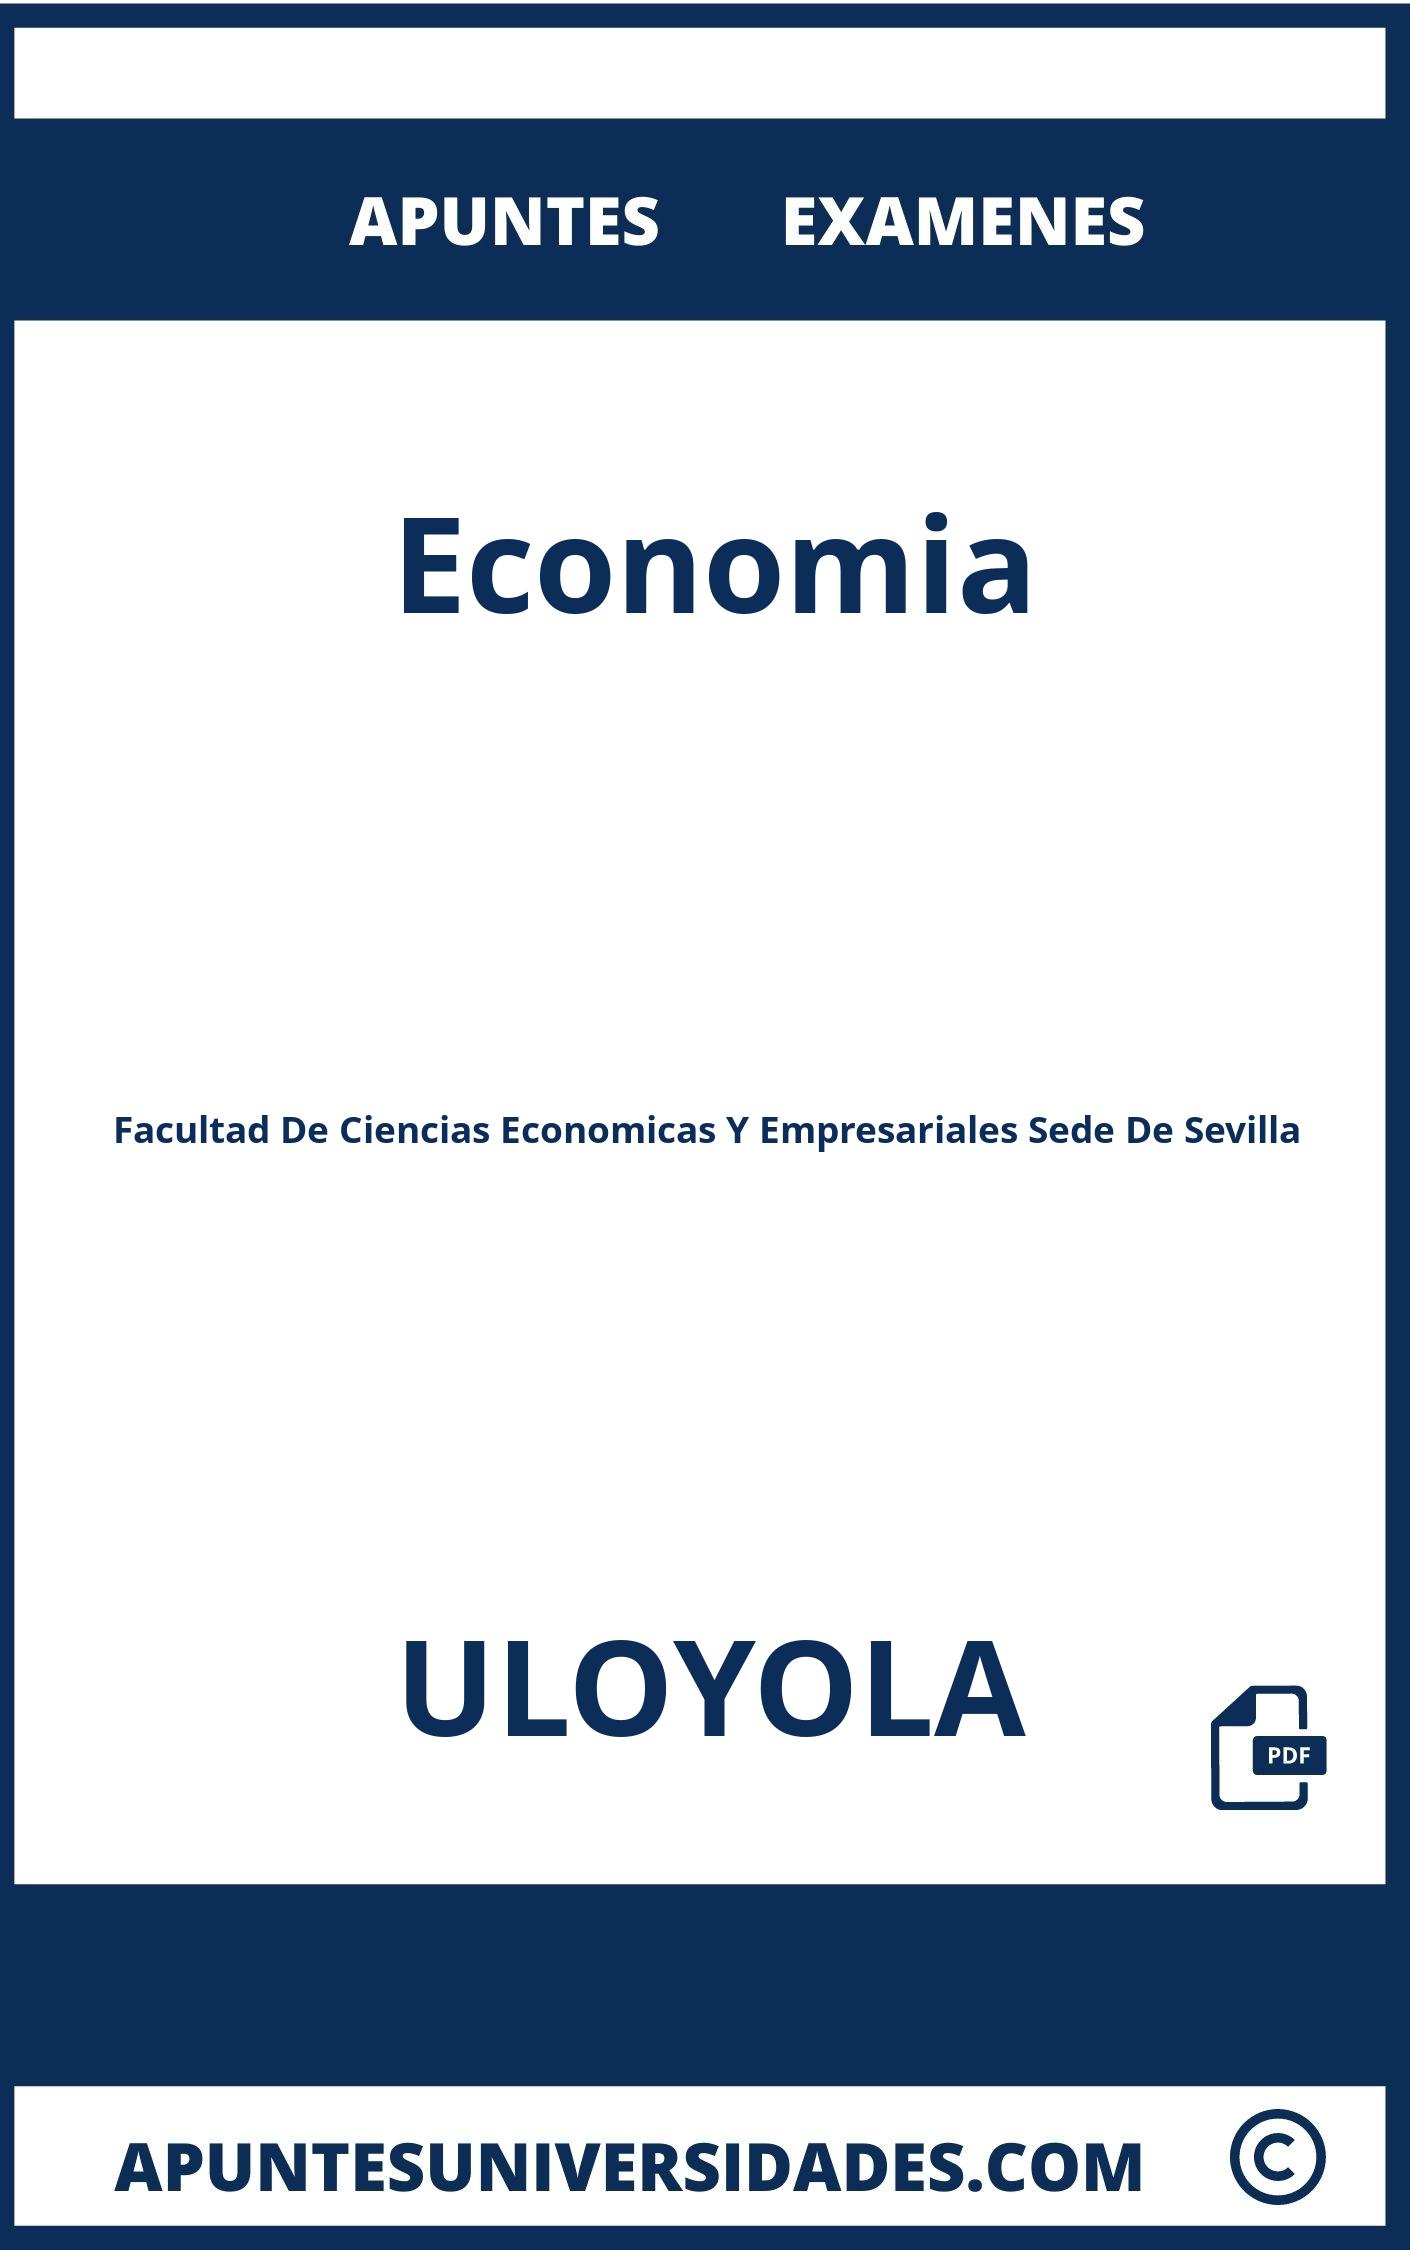 Apuntes y Examenes Economia ULOYOLA